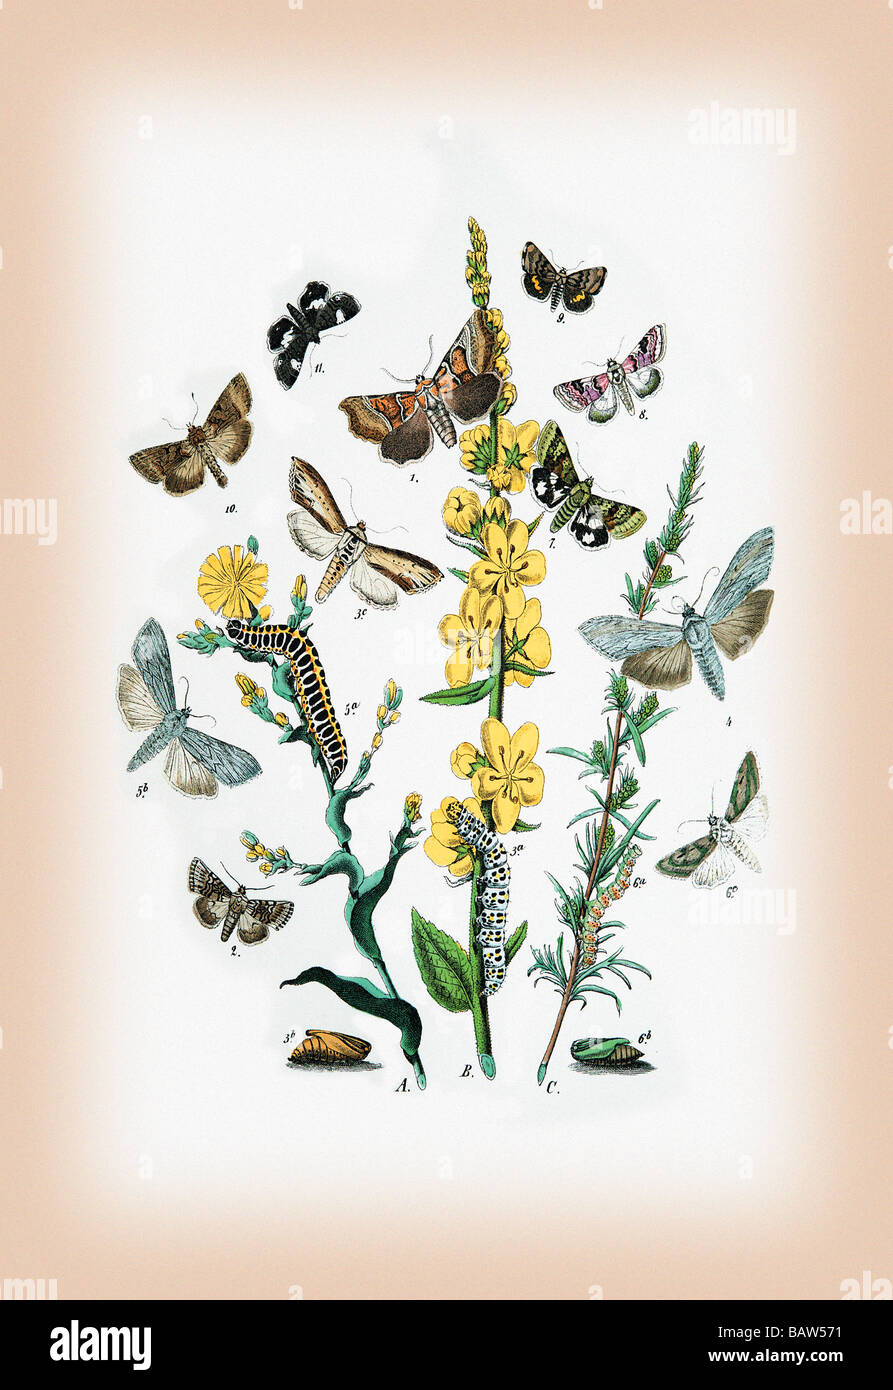 Moths: Heliaca Tenebrata,Cucullia Lactucae,et al. Stock Photo